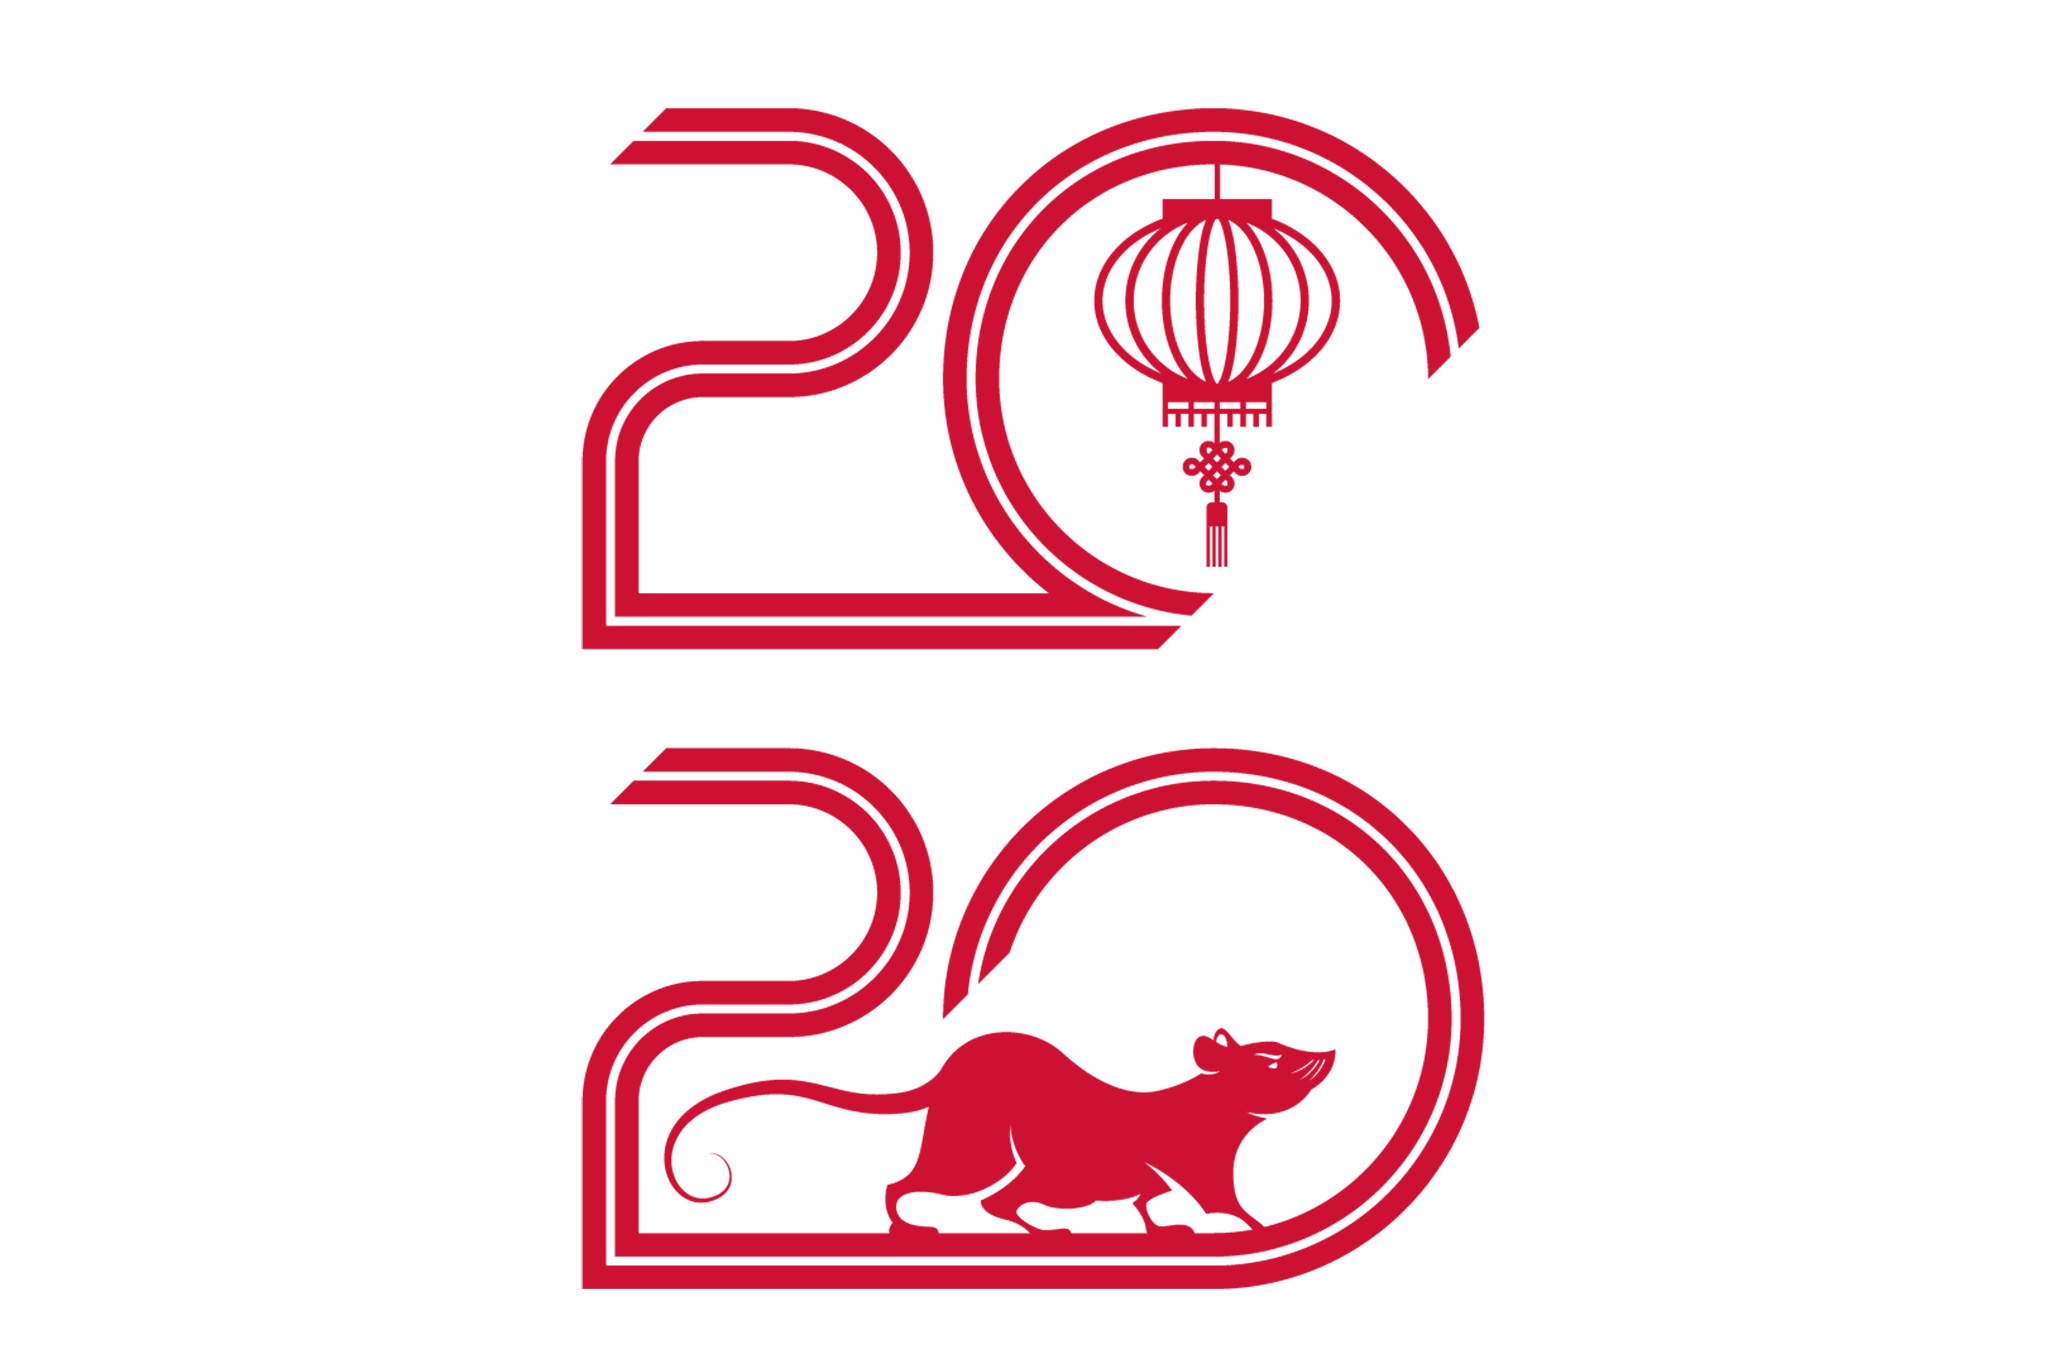 Lunar New Year 2020